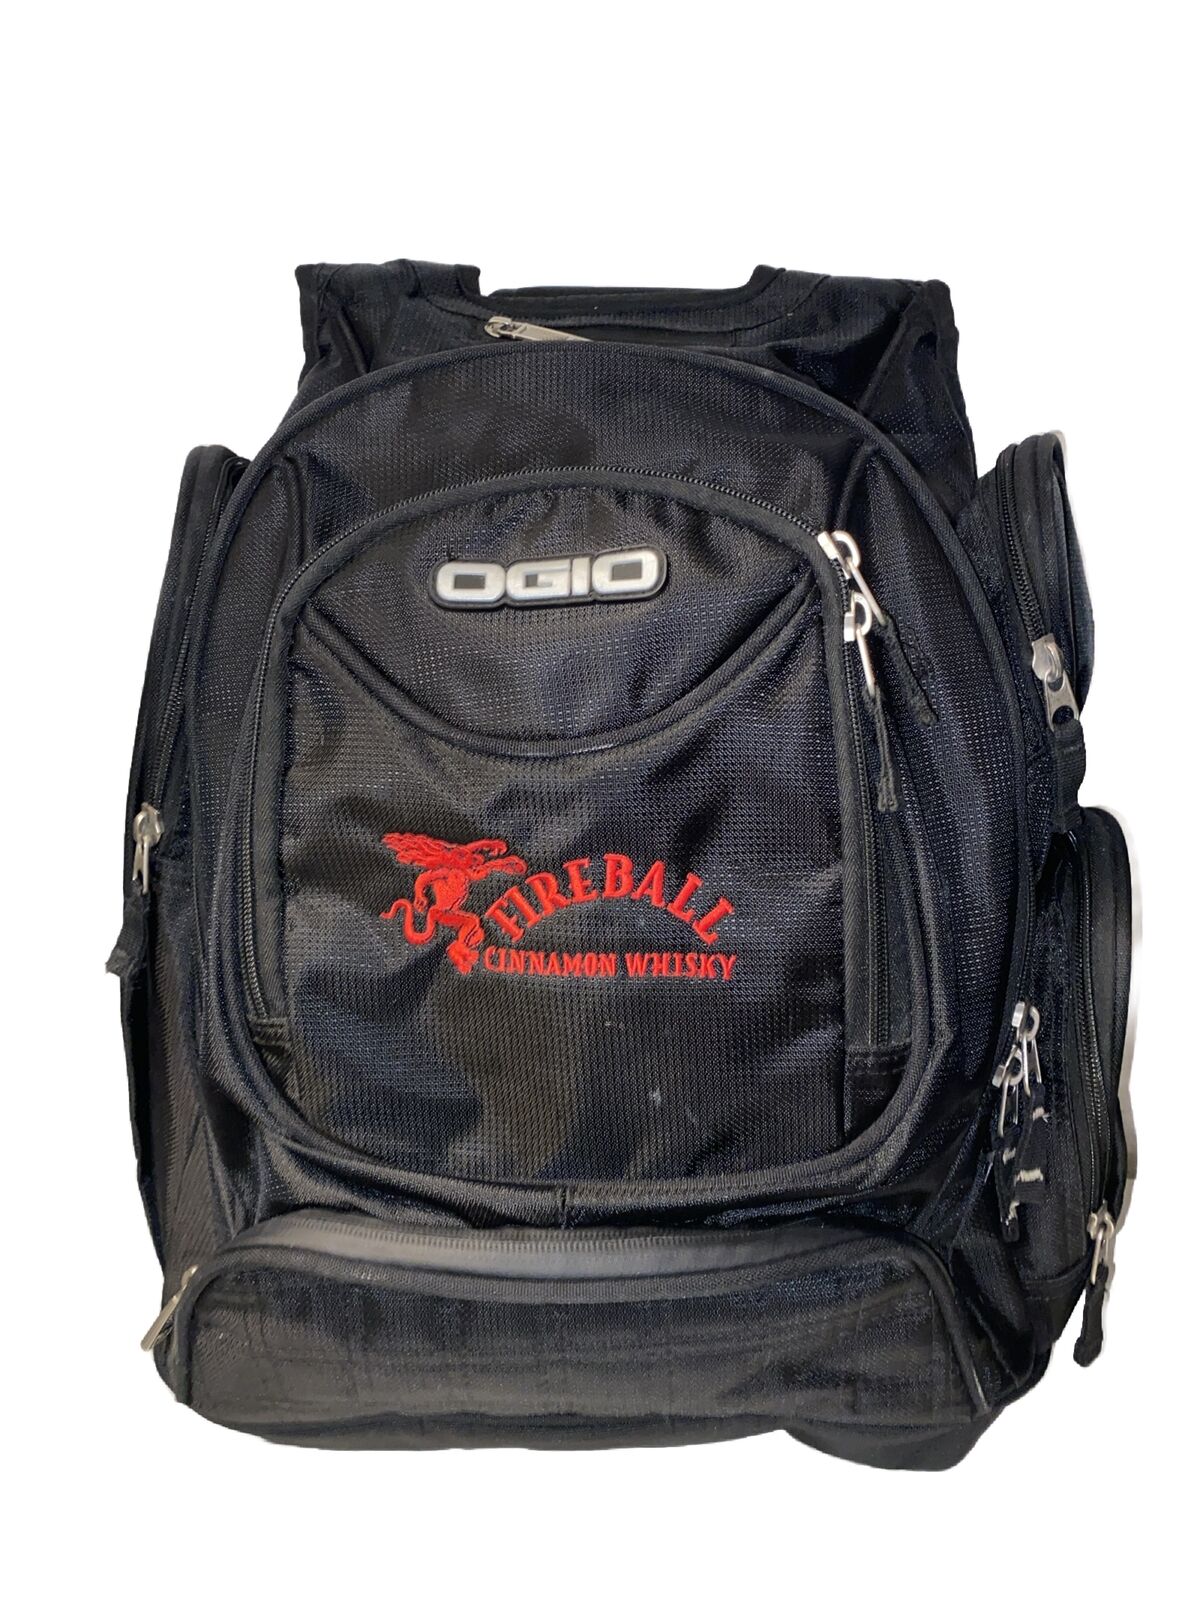 FIREBALL Cinnamon Whisky Devil Logo OGIO Metro Street Black Laptop Backpack Rare